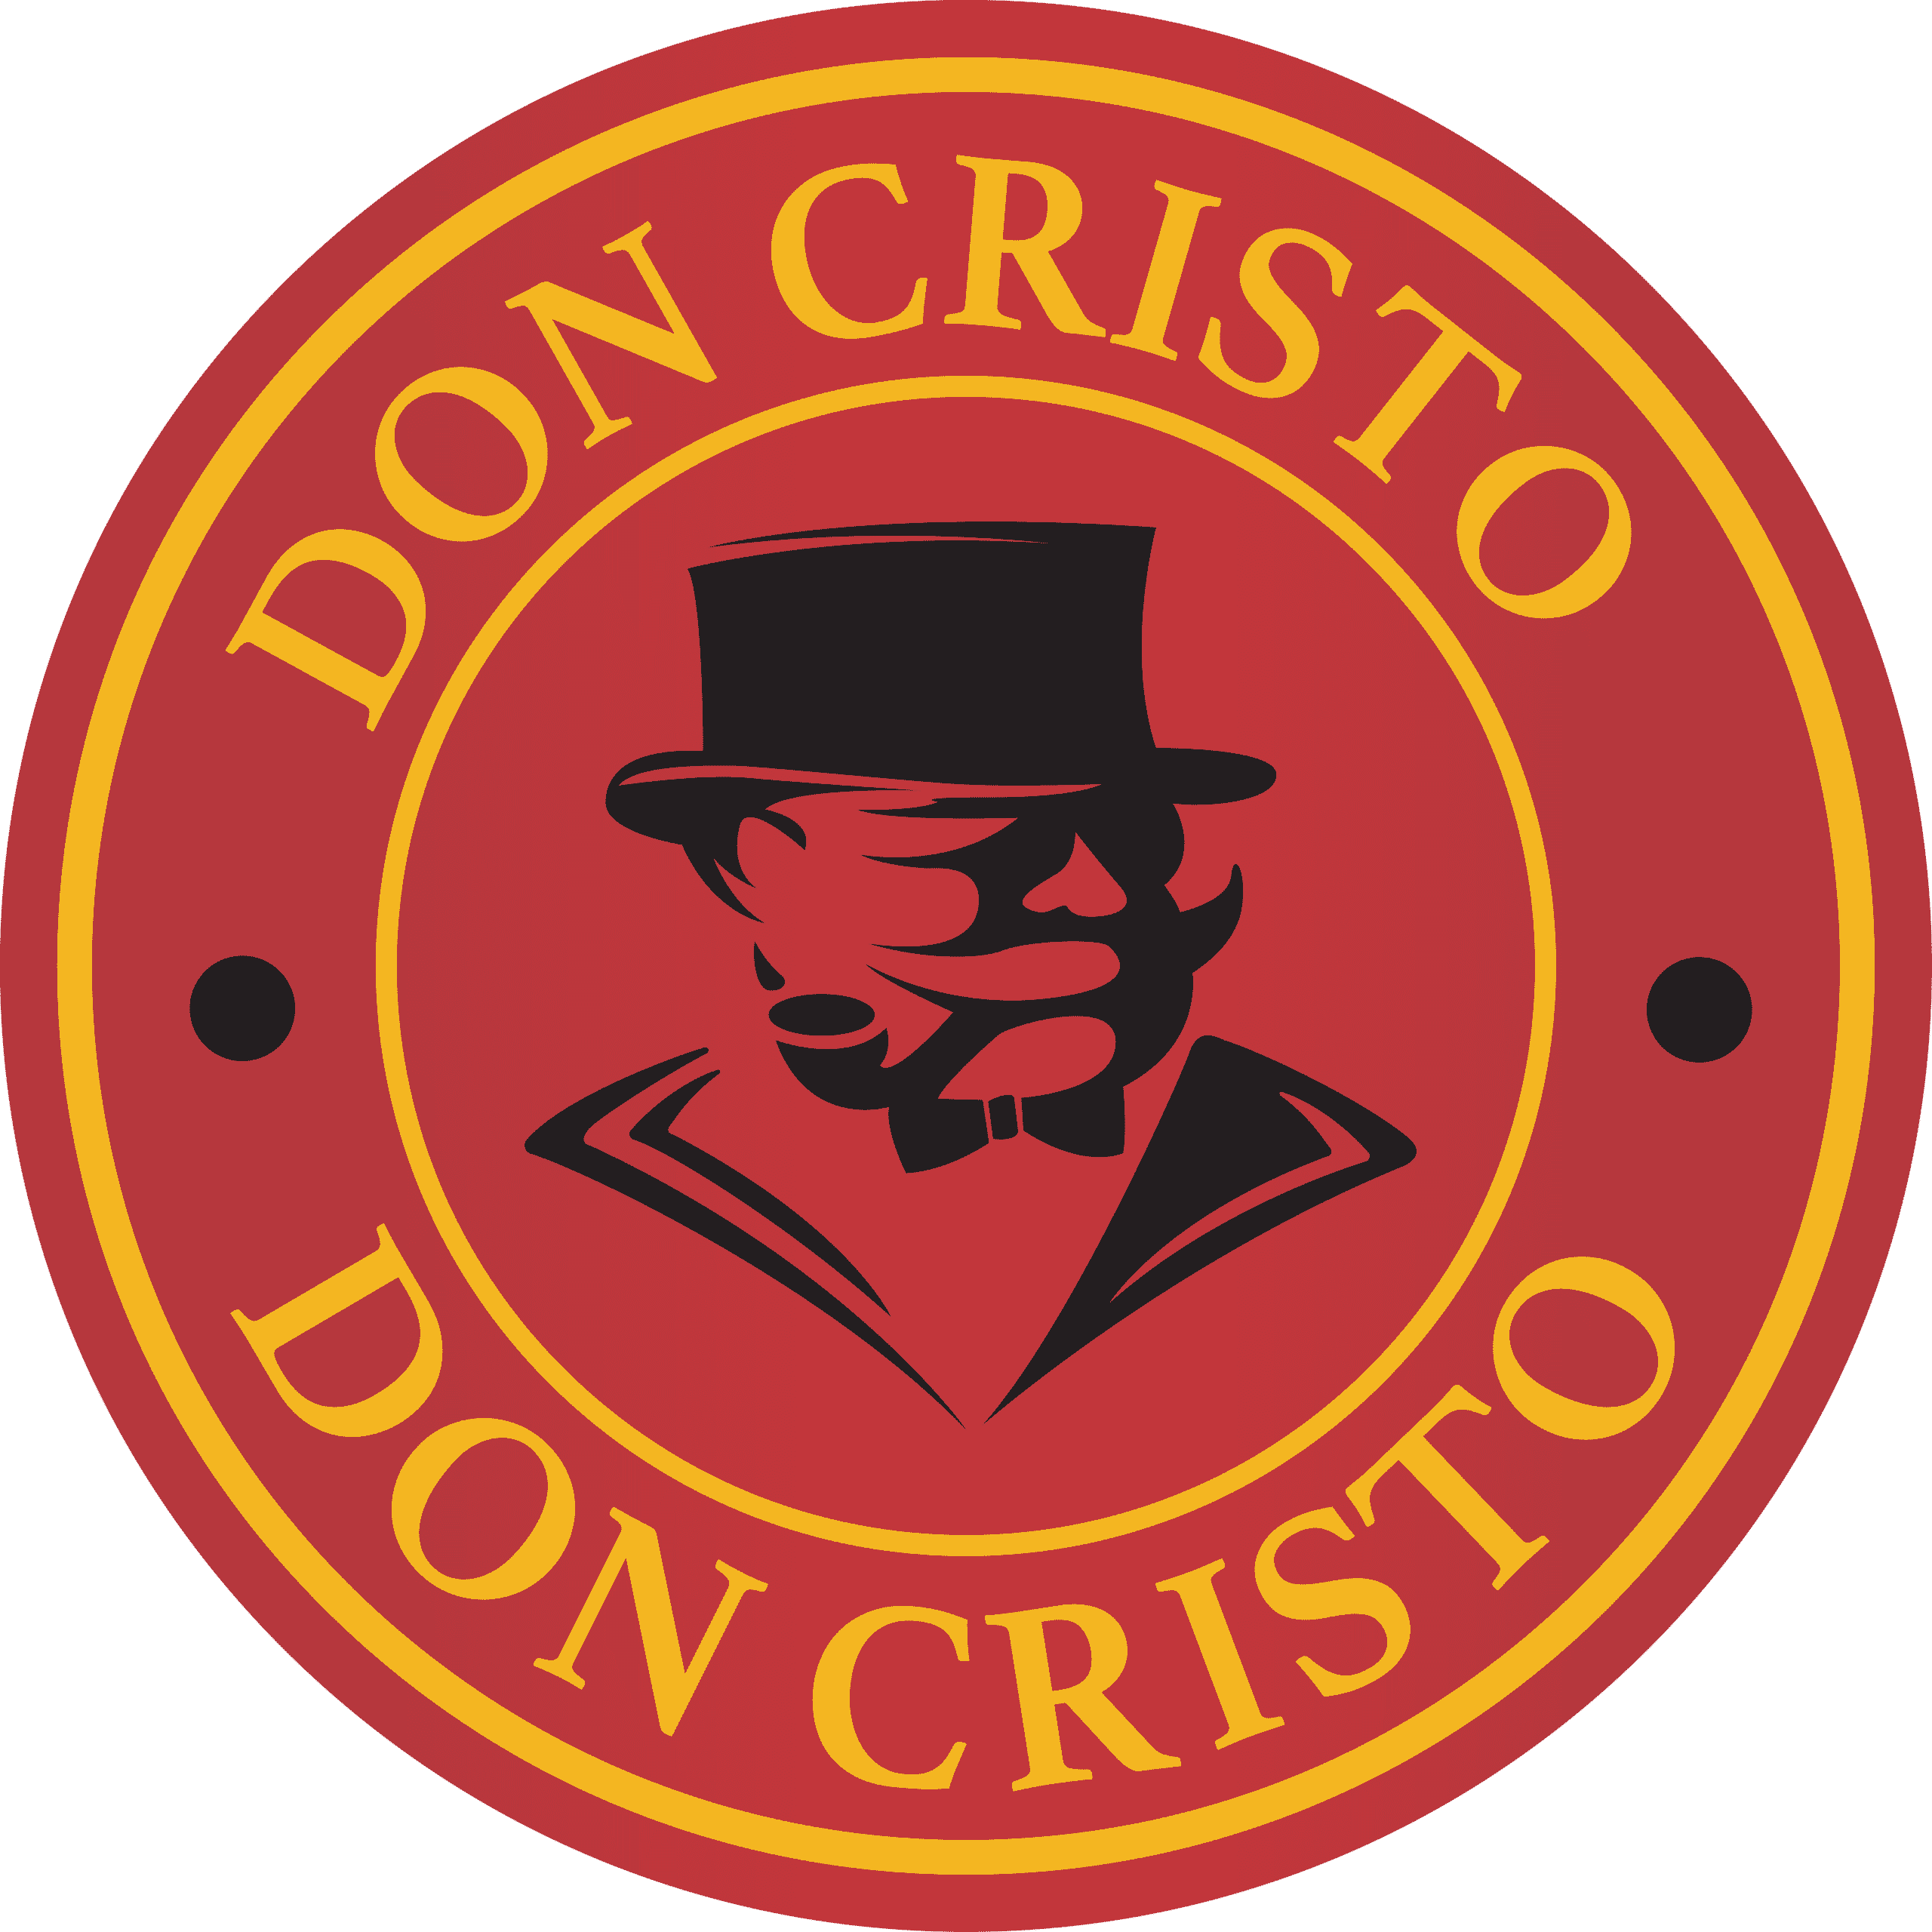 Don Cristo Μιας Χρήσης